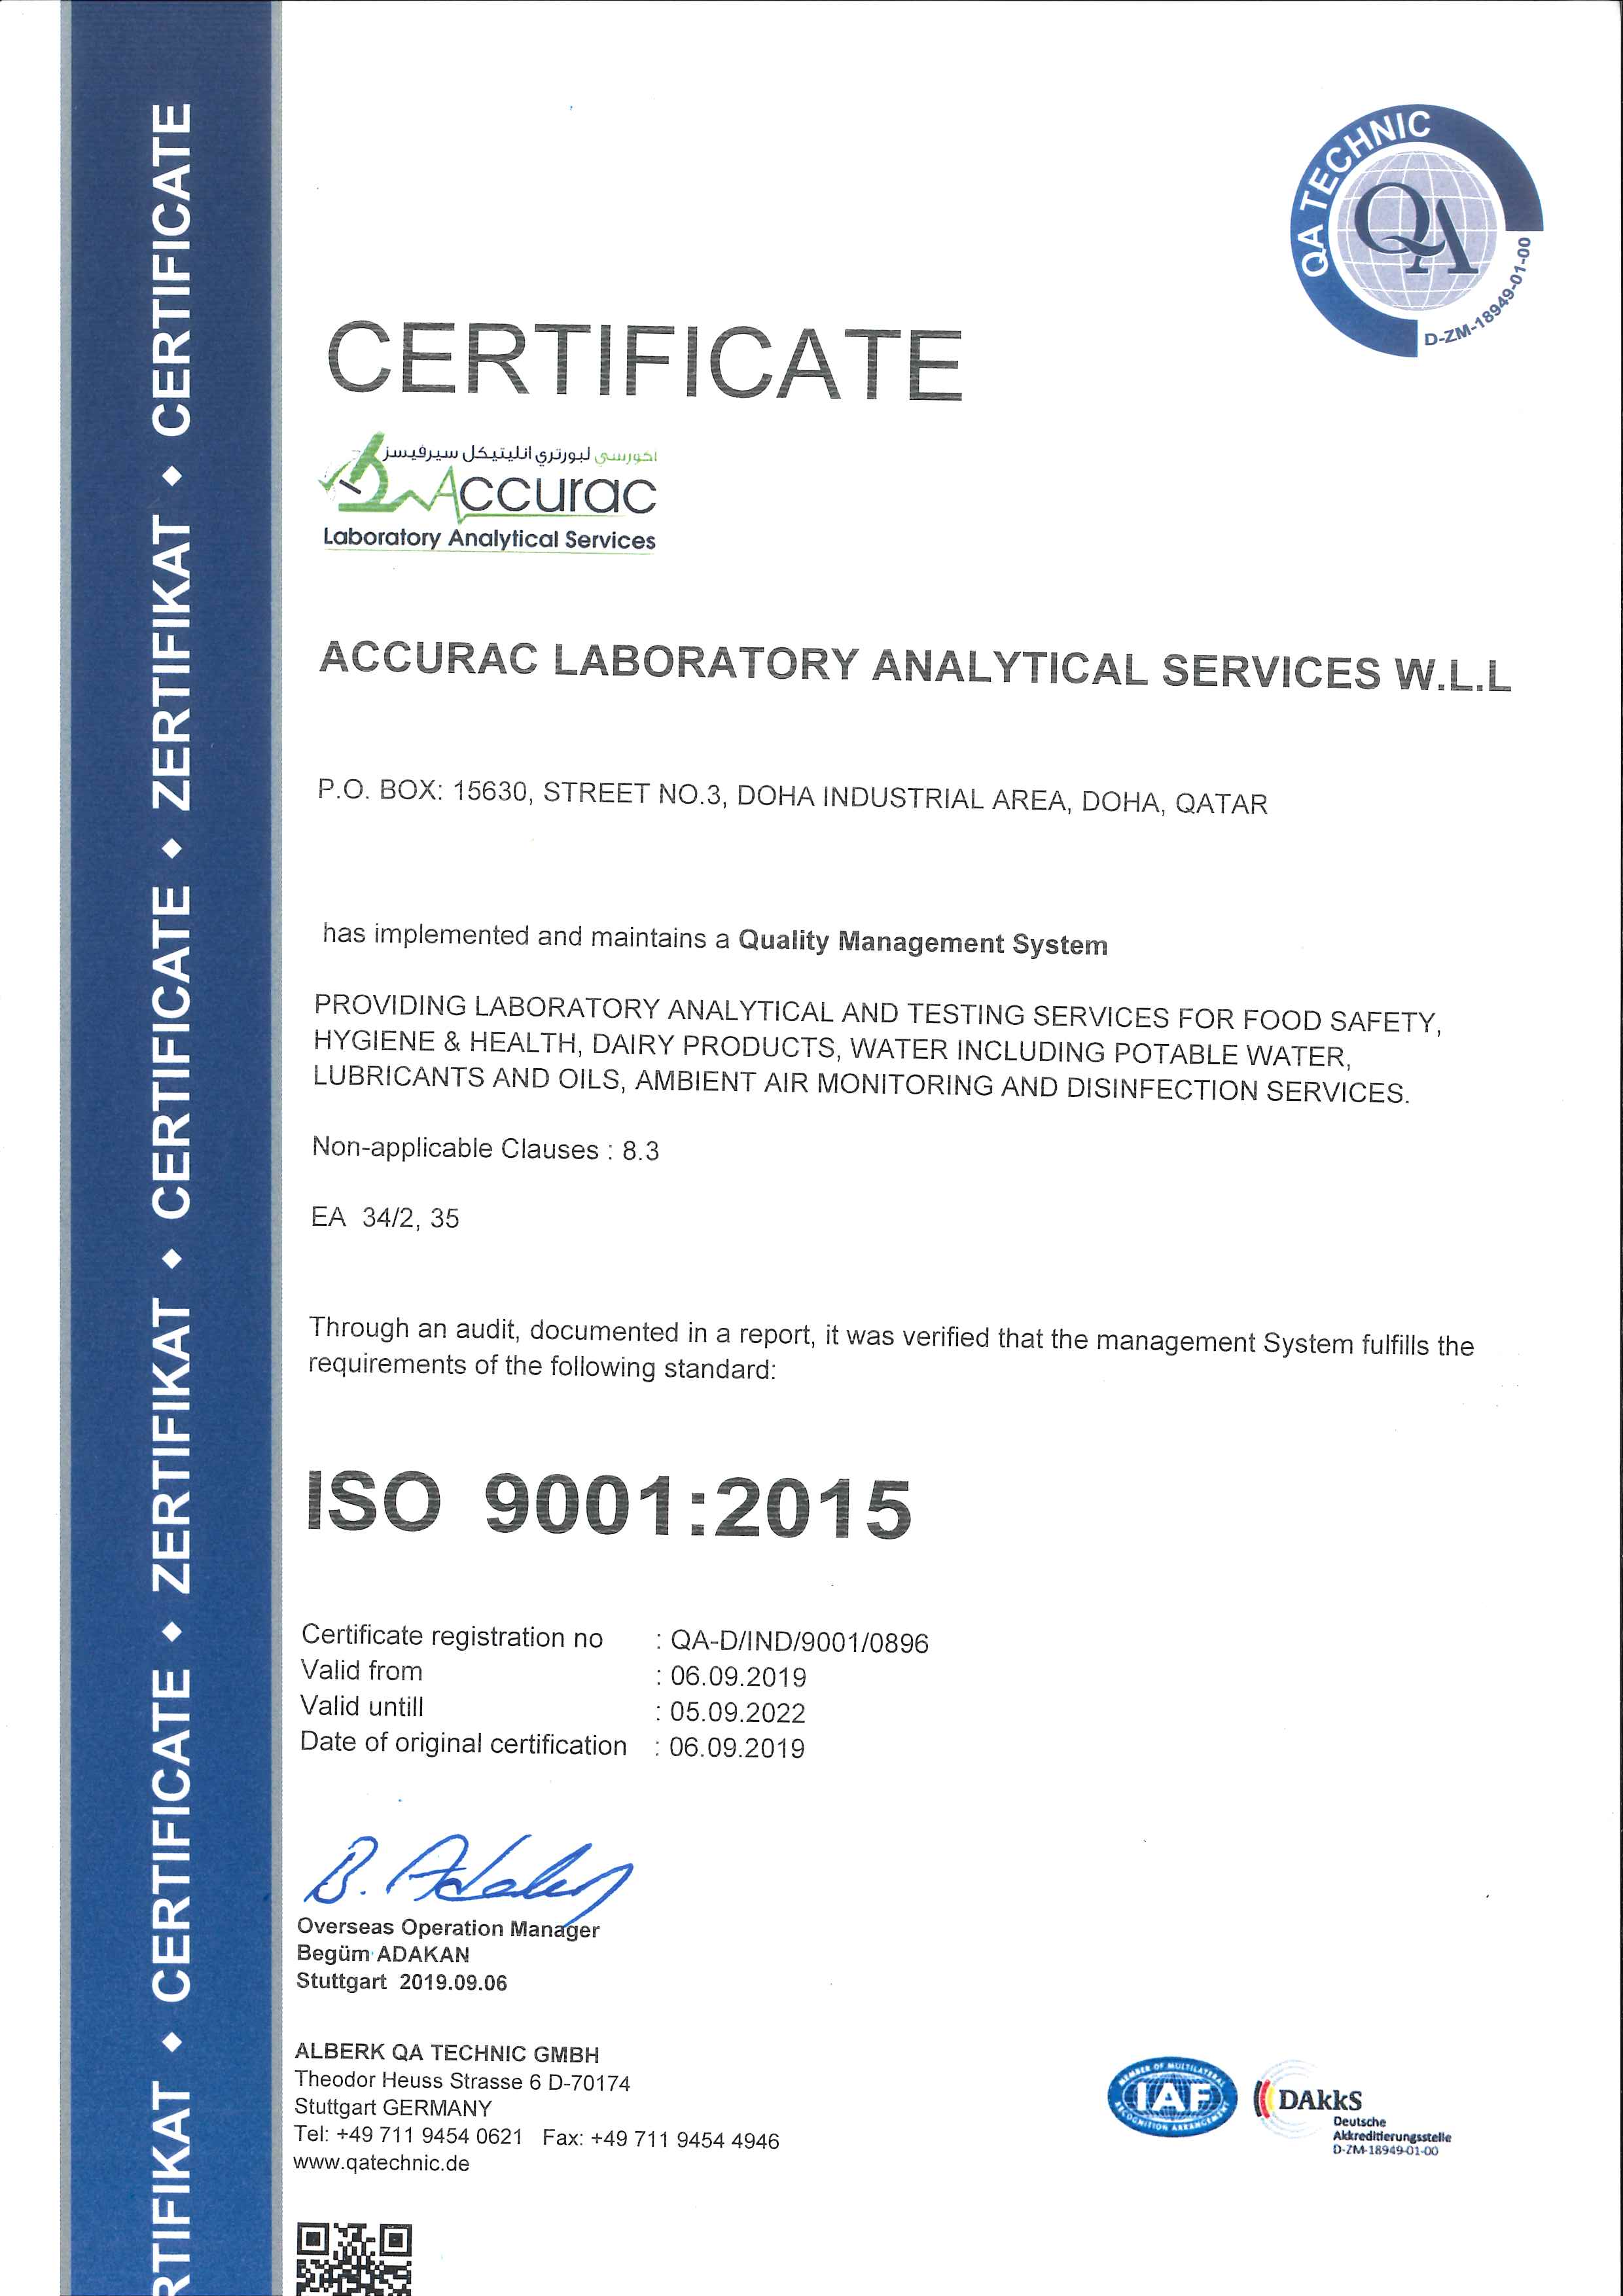 ISO 9001:2015 Accreditation - Accurac Laboratory